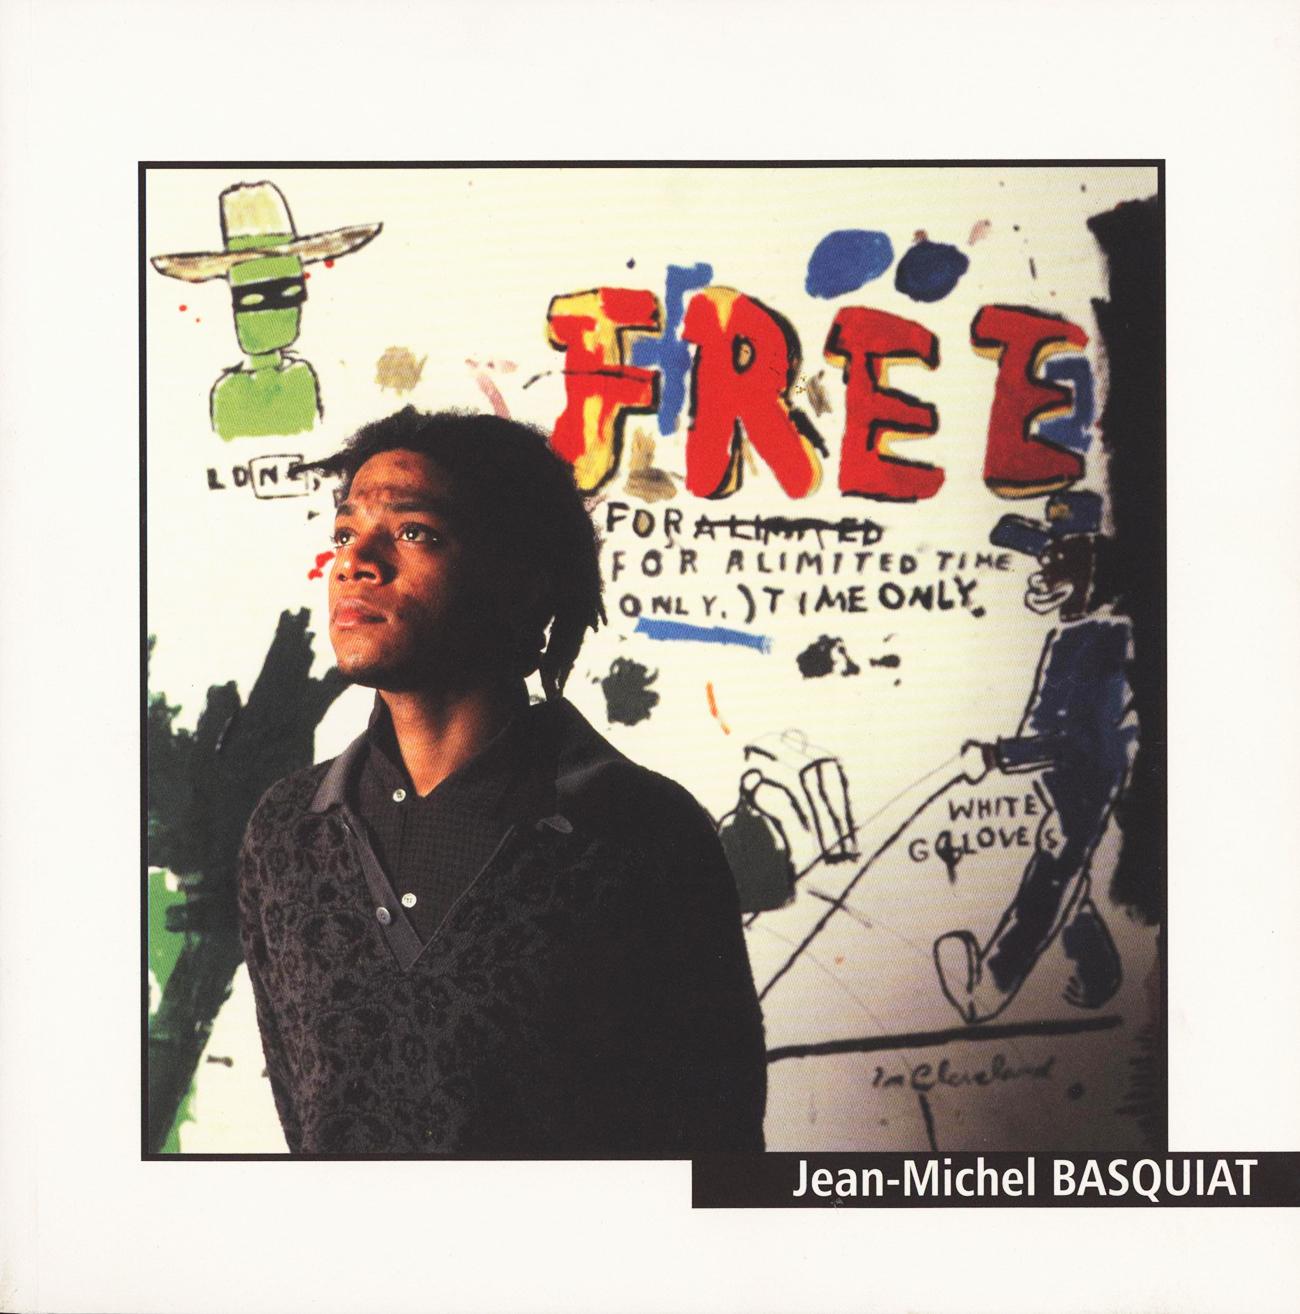 Basquiat : The Transcendental Voyage, à L'Espal, Catalog Le Mans, France, 1999 - Art de after Jean-Michel Basquiat